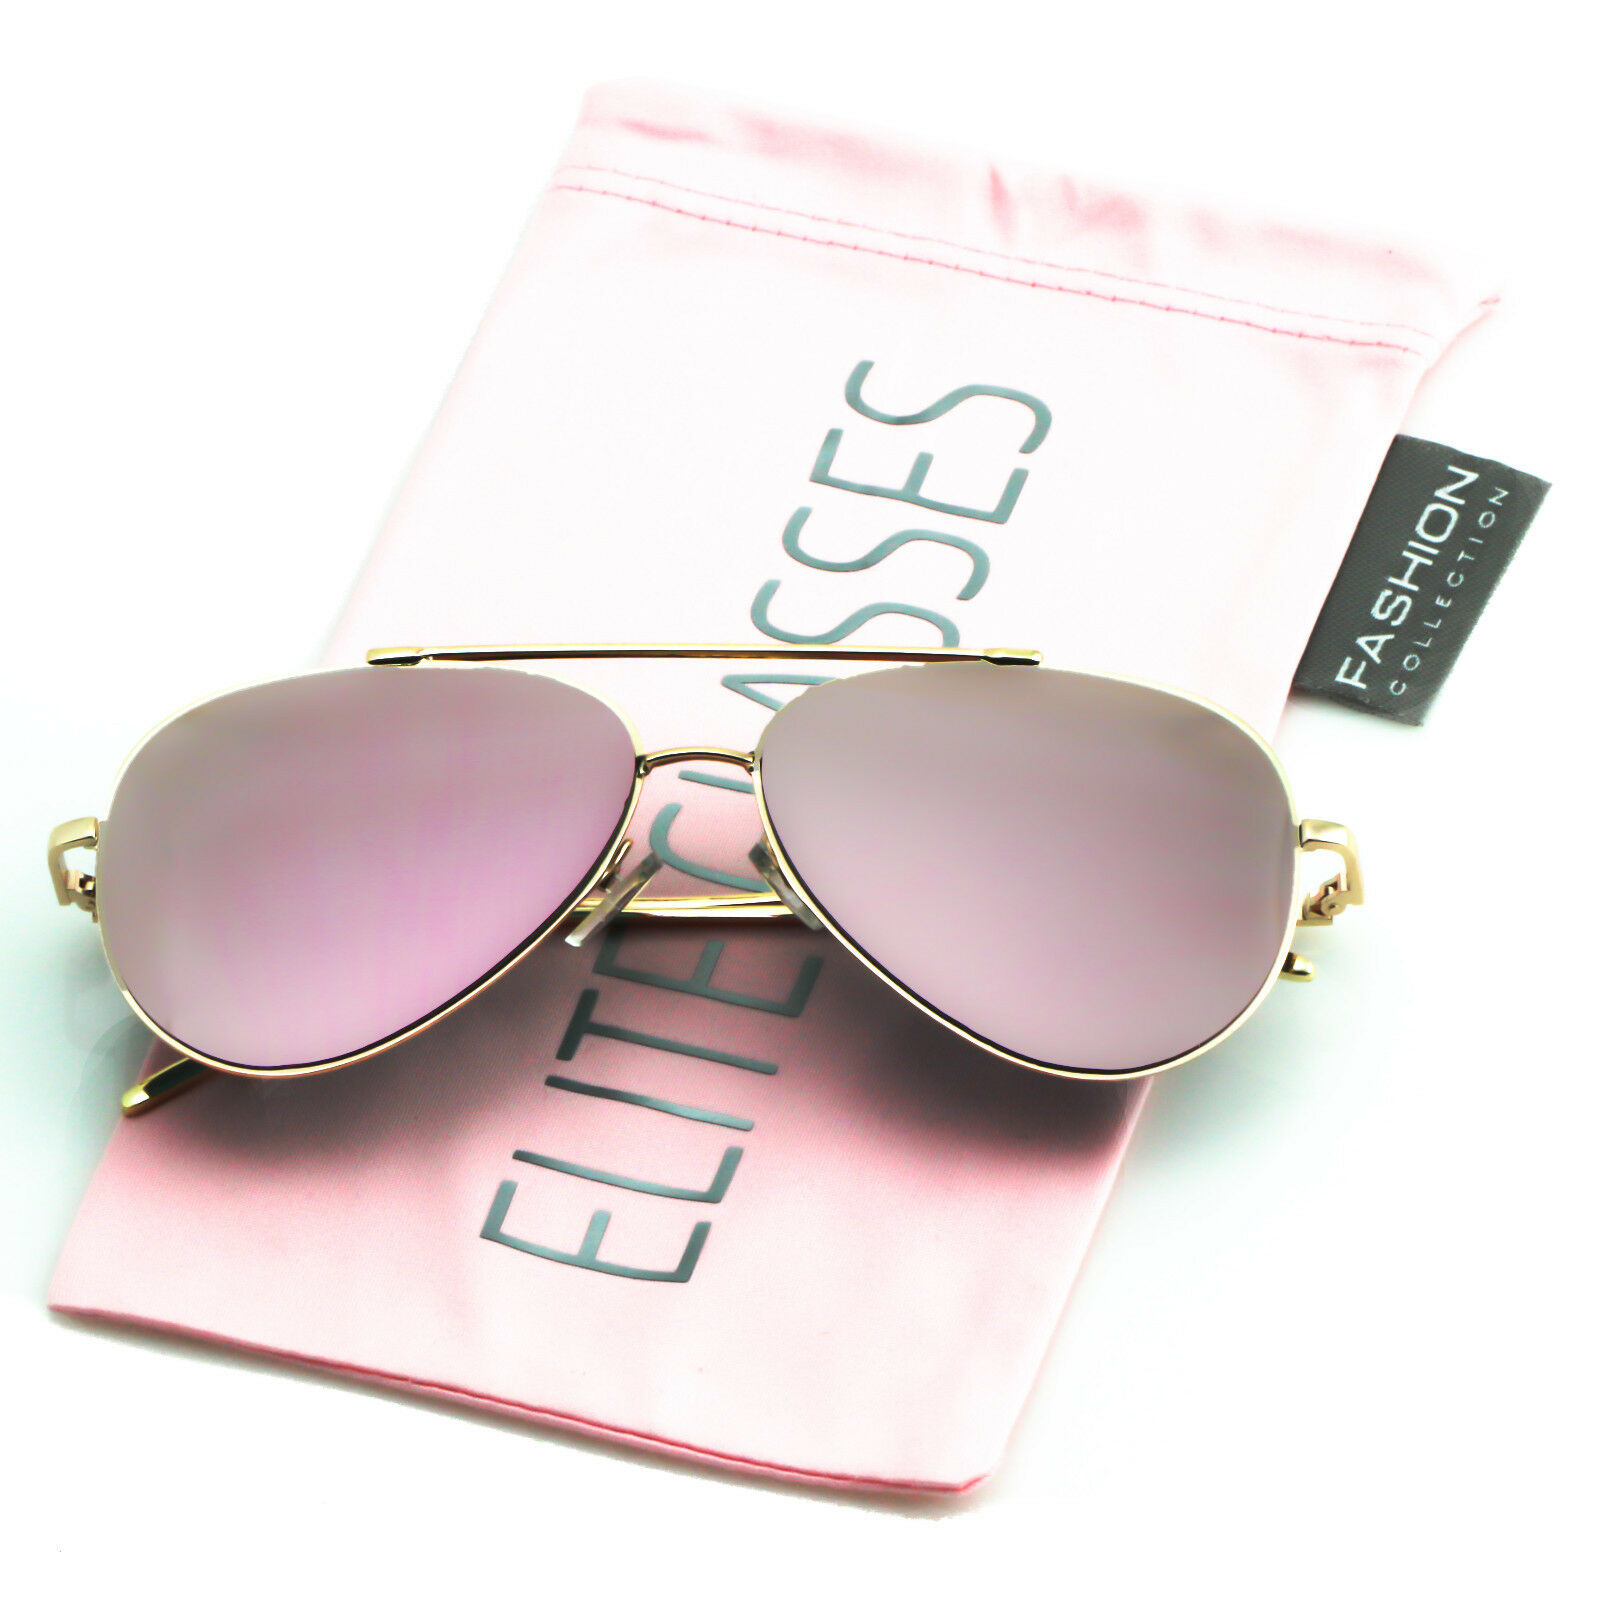 Rose Gold Women Sunglasses Designer Mirrored Metal Oversized Glasses New